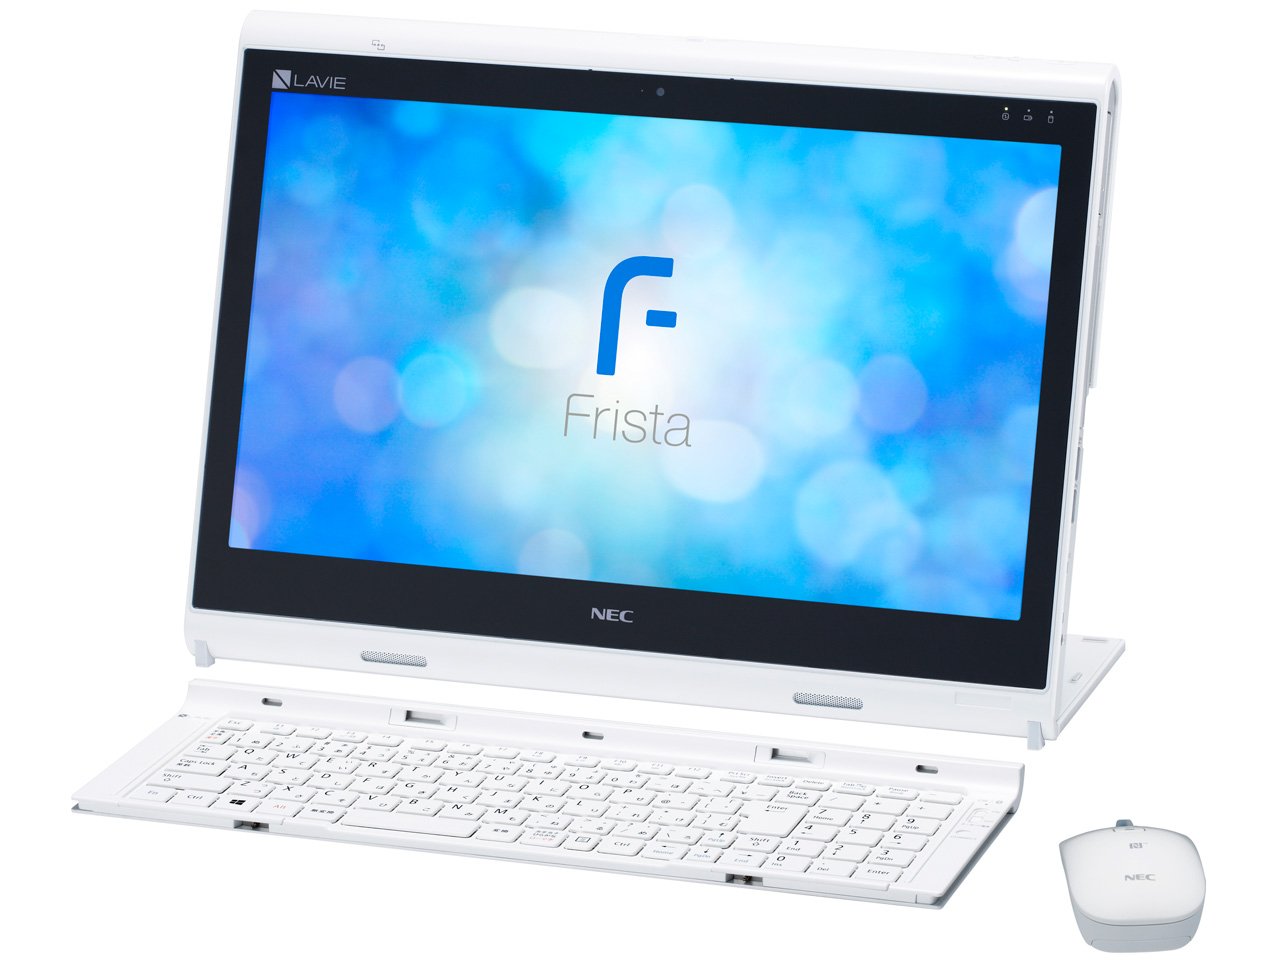 価格.com - LAVIE Hybrid Frista HF150/DAW PC-HF150DAW [ピュアホワイト] の製品画像